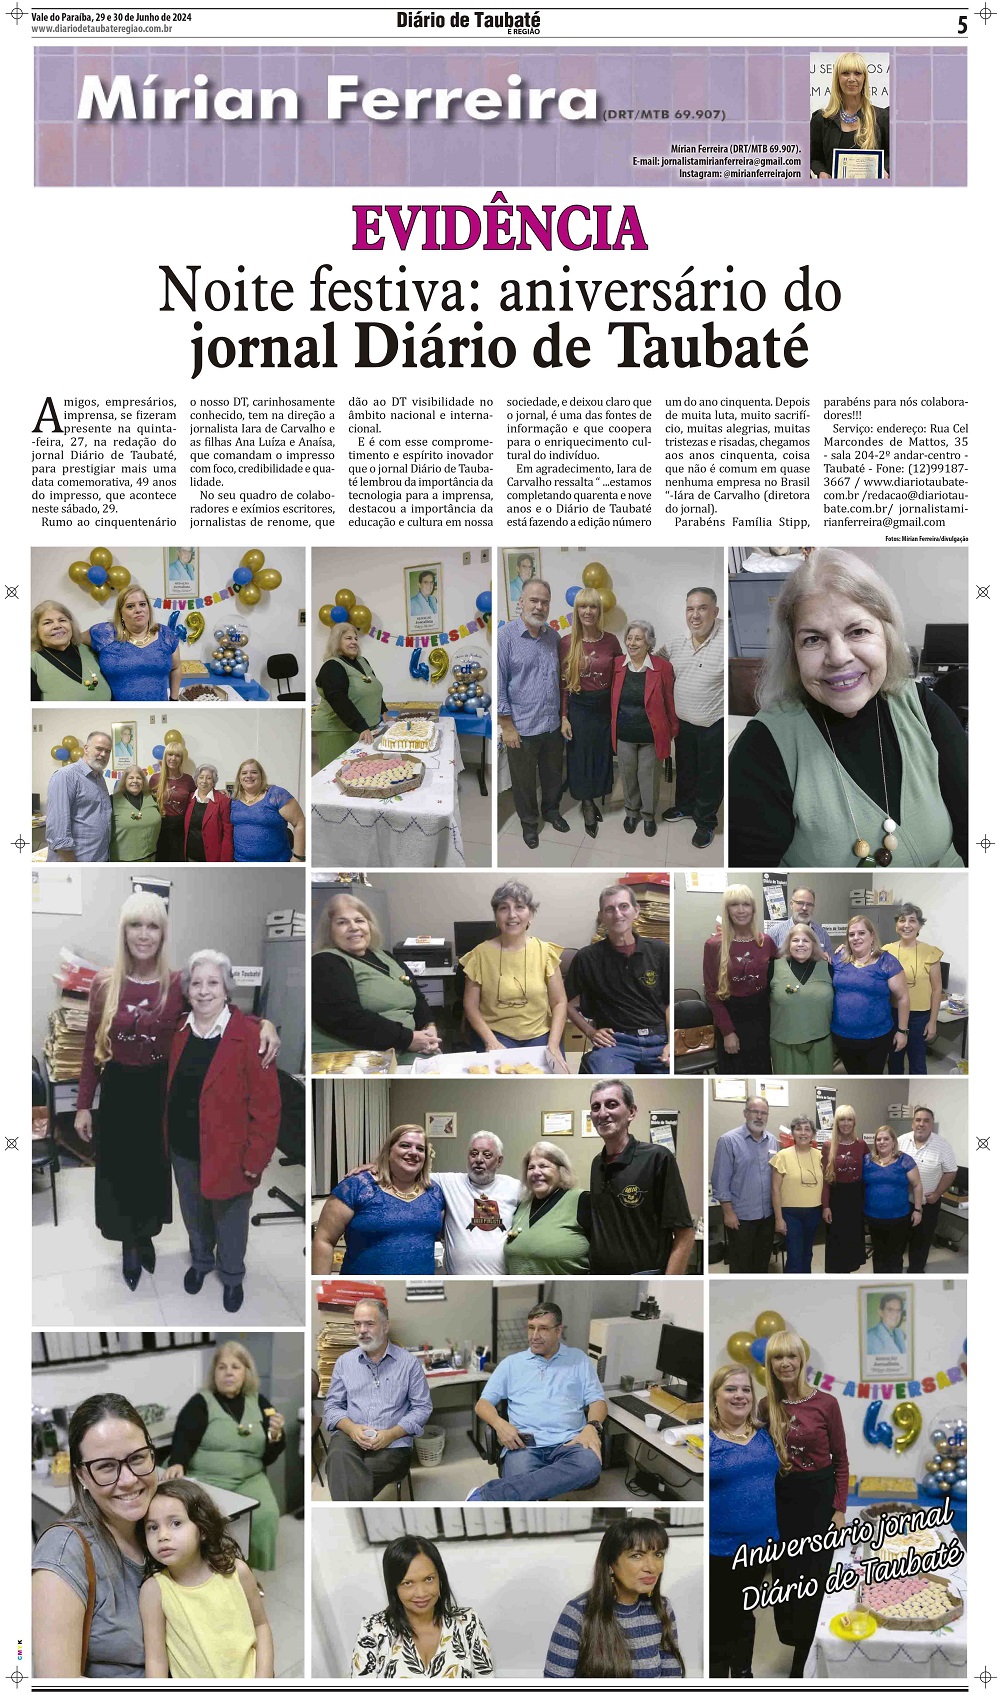 Evidência – Noite festiva: aniversário do jornal Diário de Taubaté